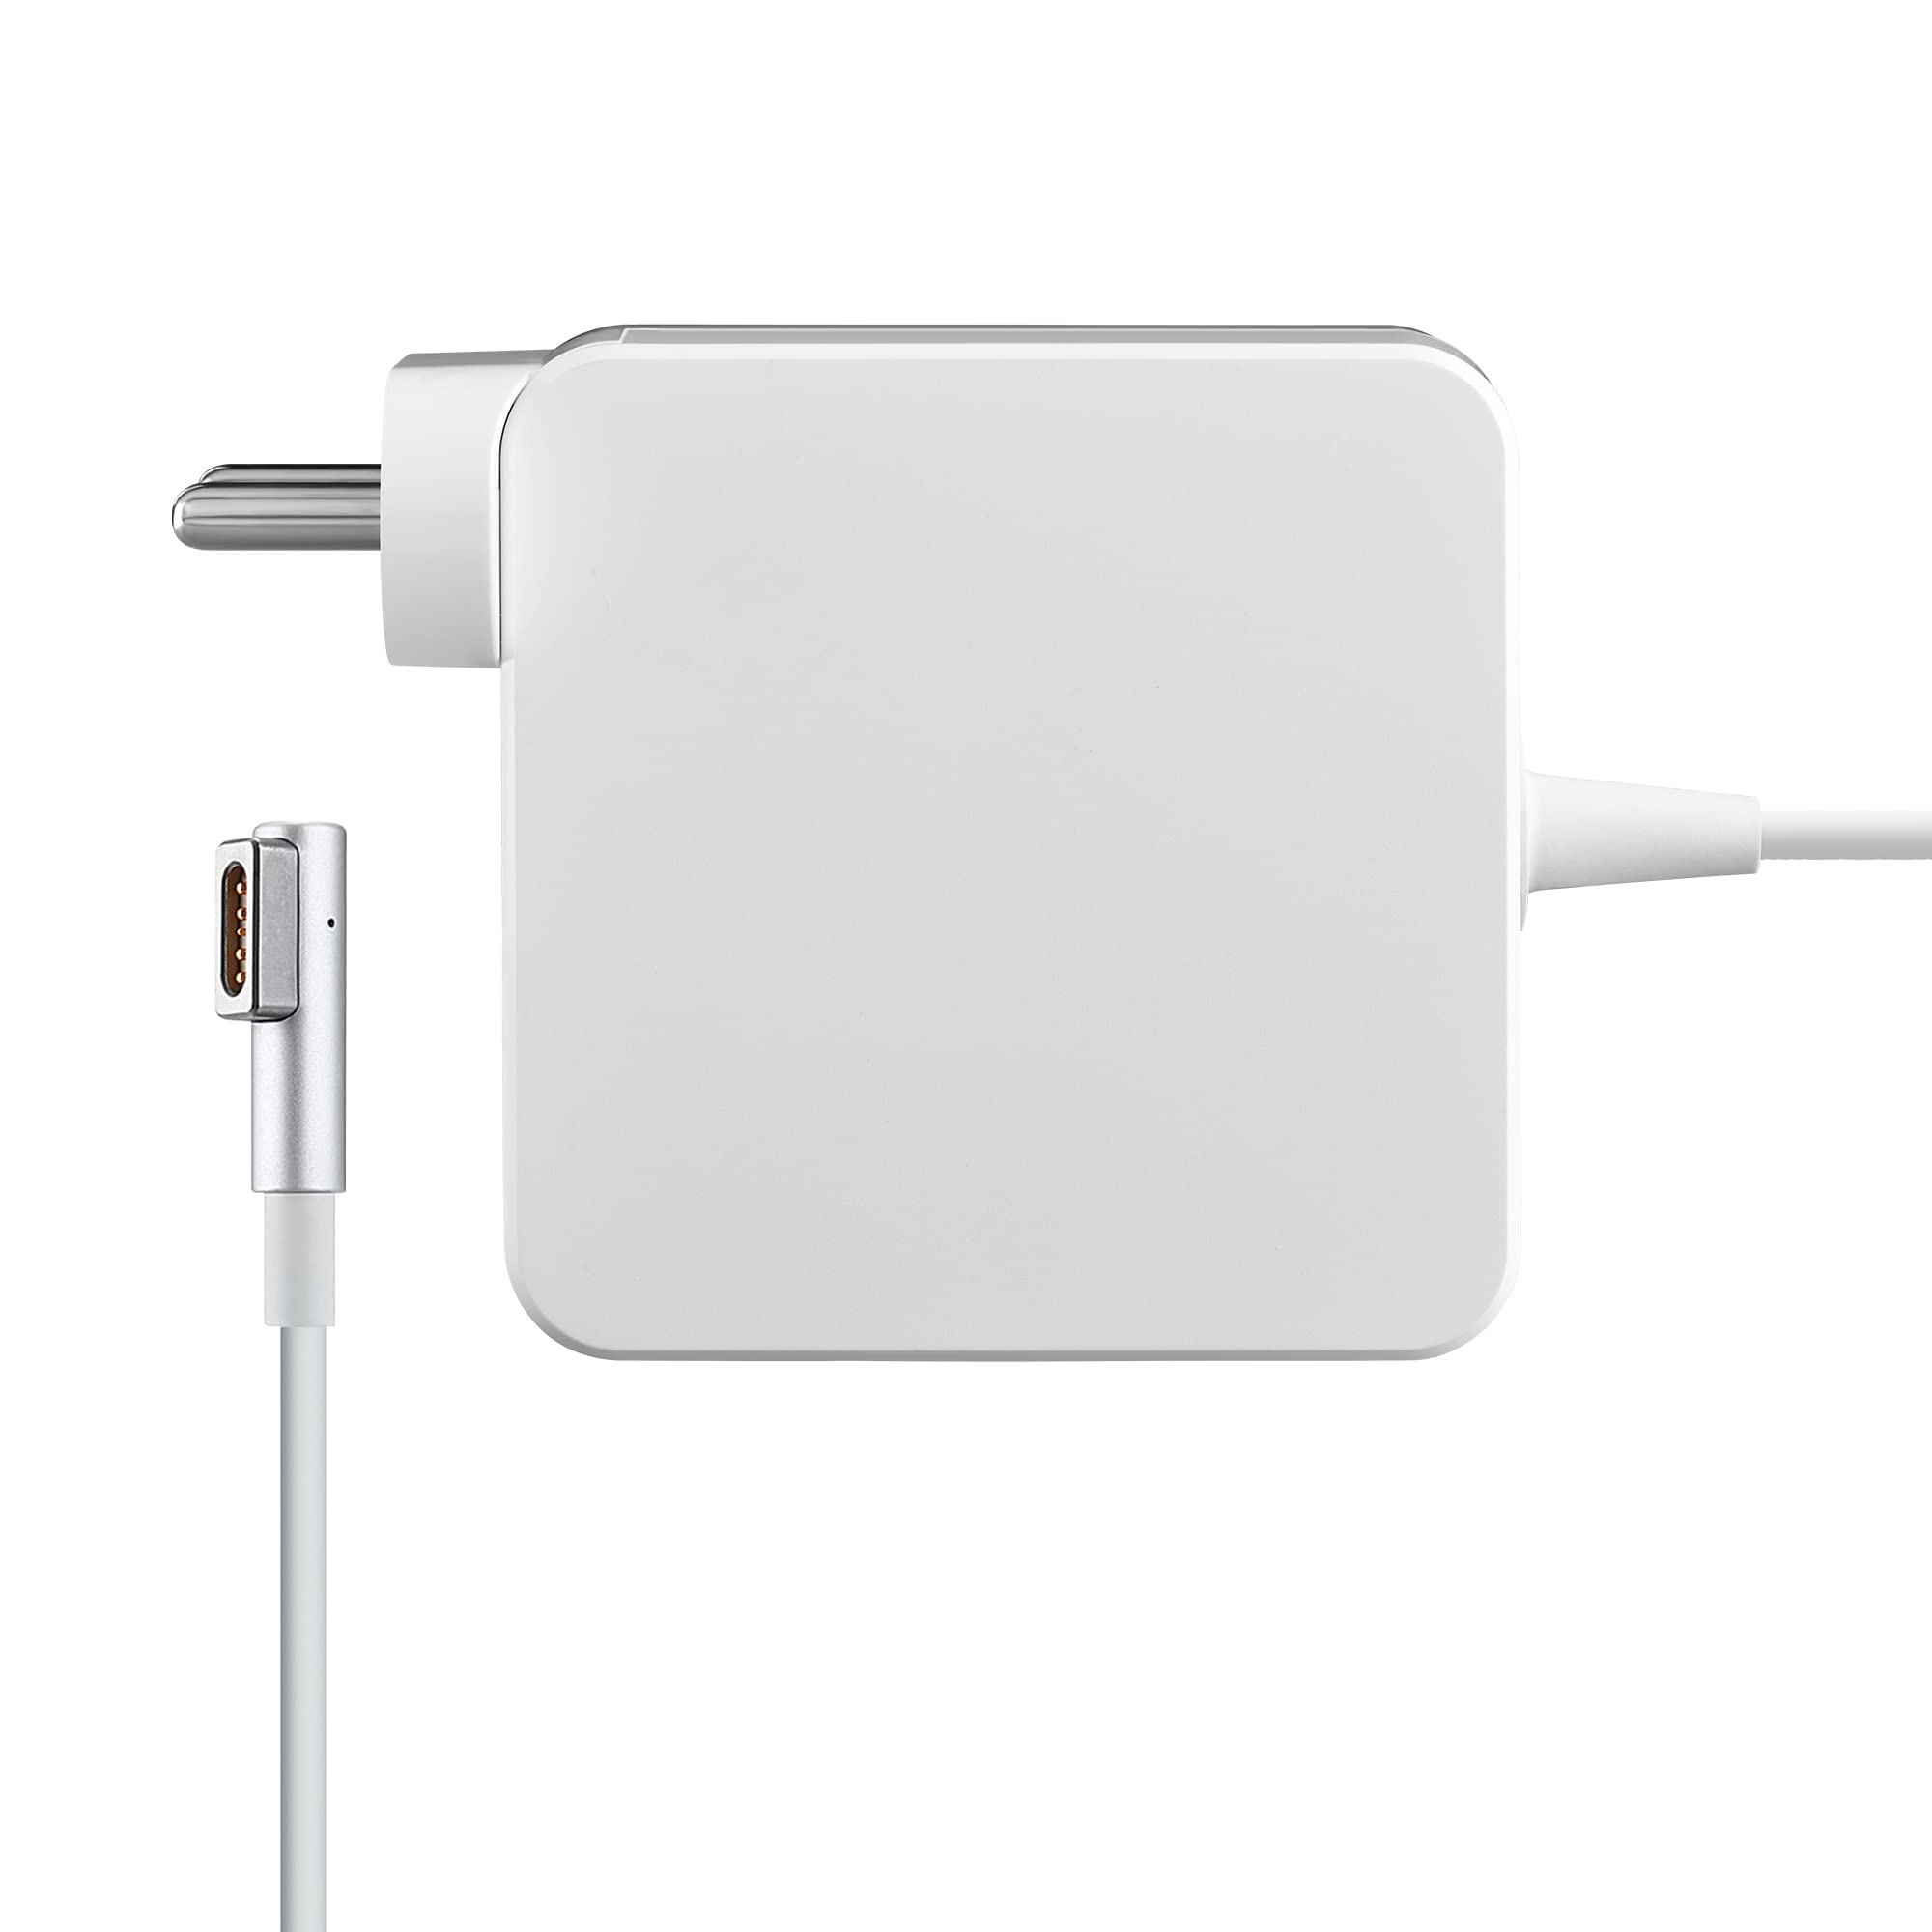 Chargeur MacBook Air 5 PINs - 85W / 16.5V / 4.5 A